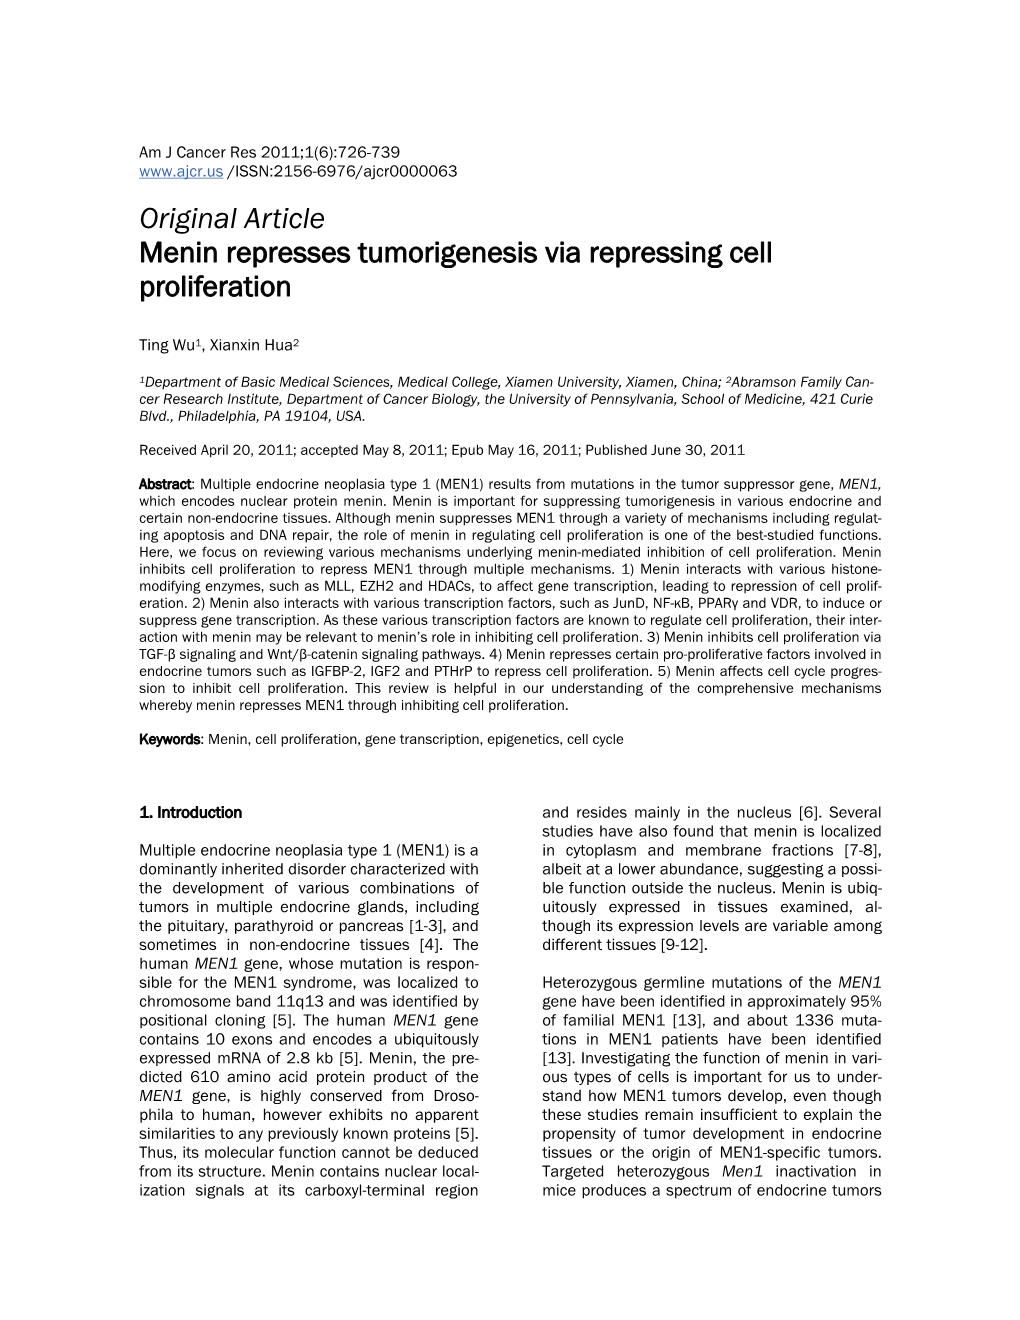 Original Article Menin Represses Tumorigenesis Via Repressing Cell Proliferation